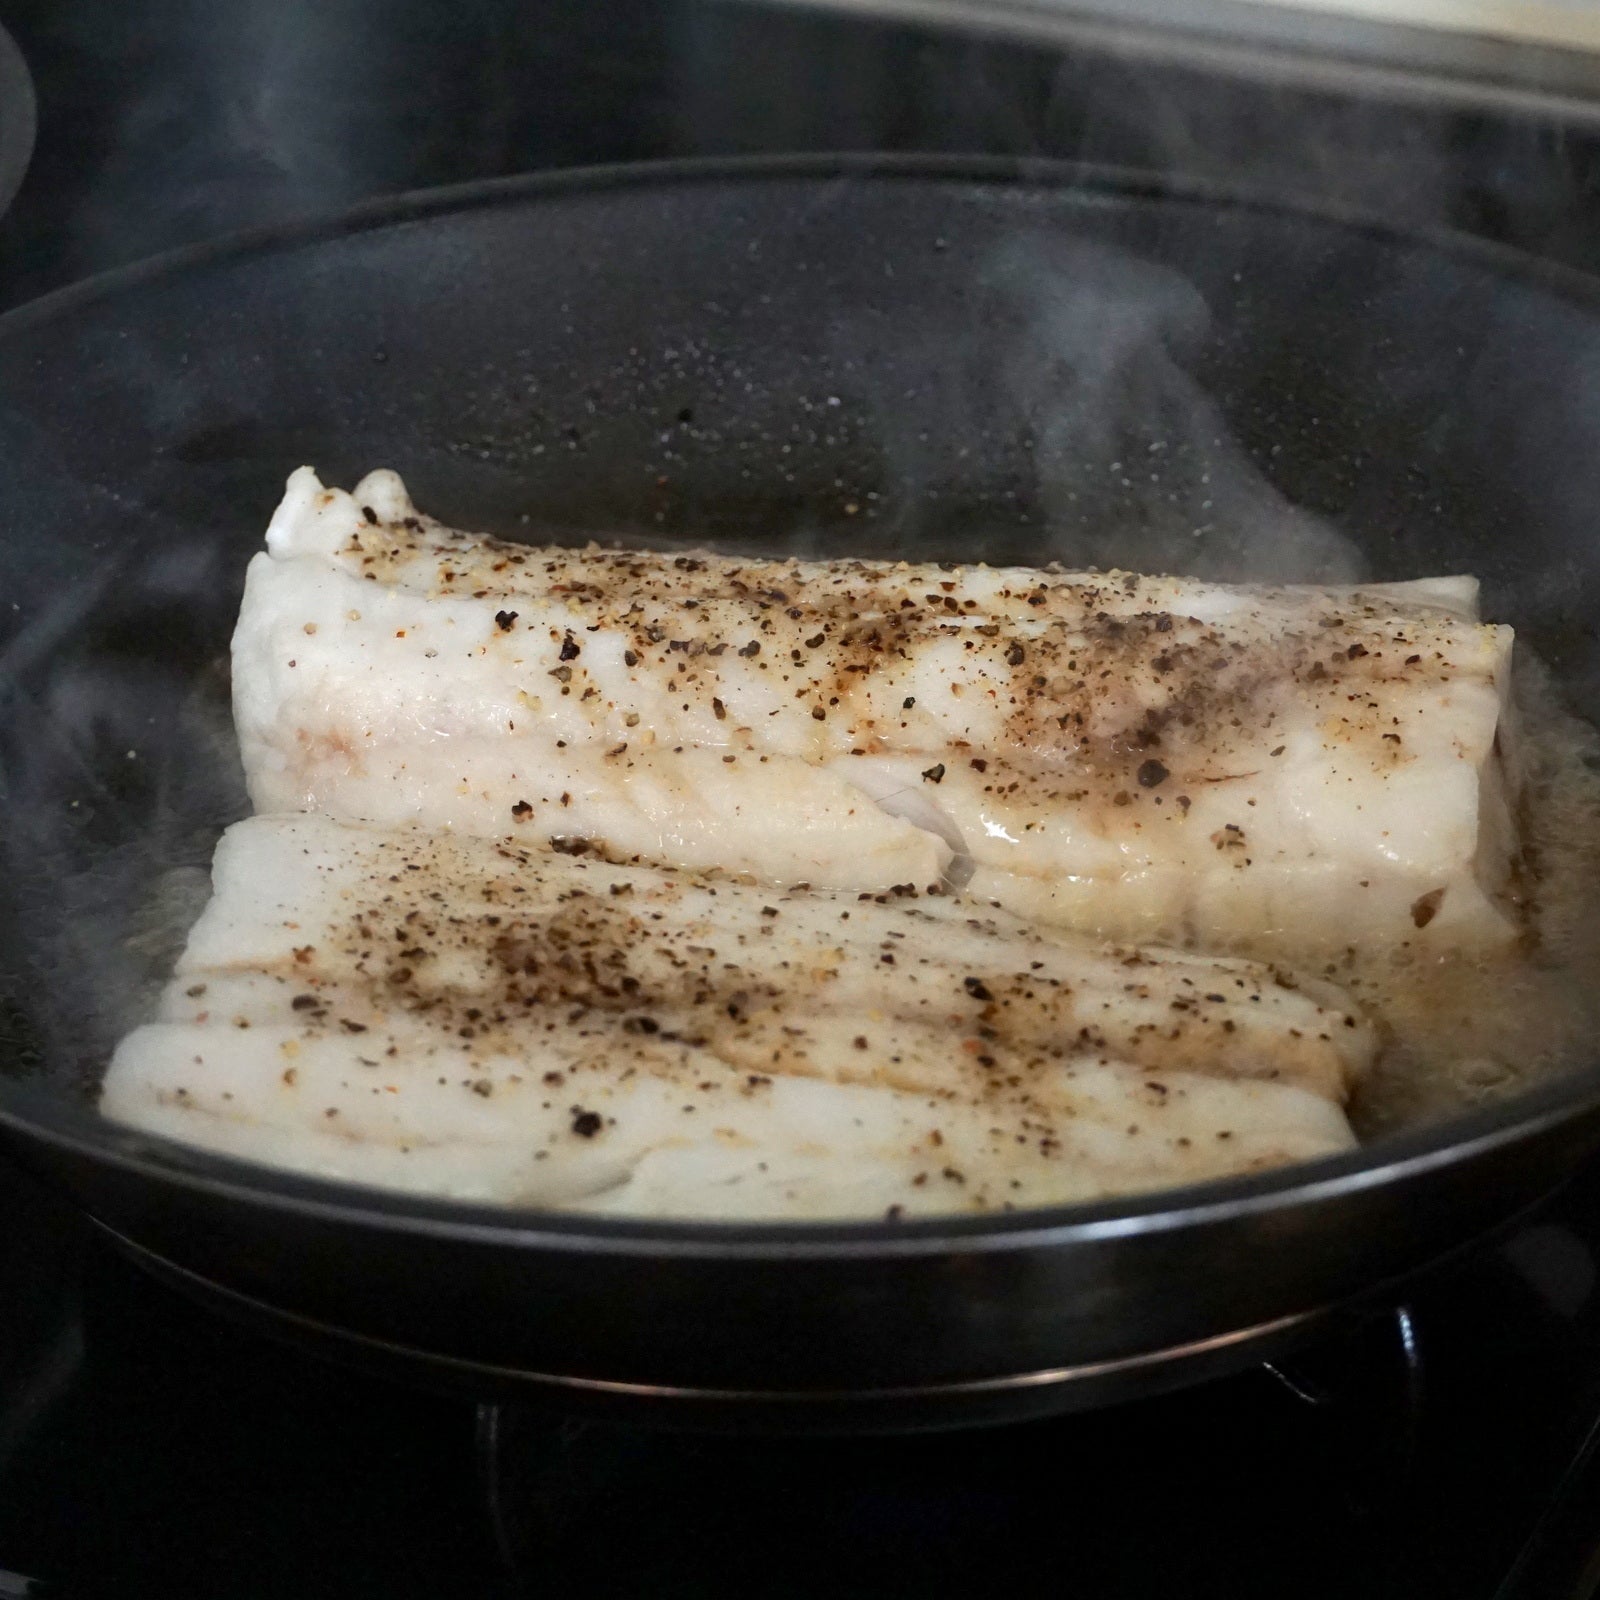 ニュージーランド産 天然 白身魚 ホキ魚 切身 (450g) ホライズンファームズ